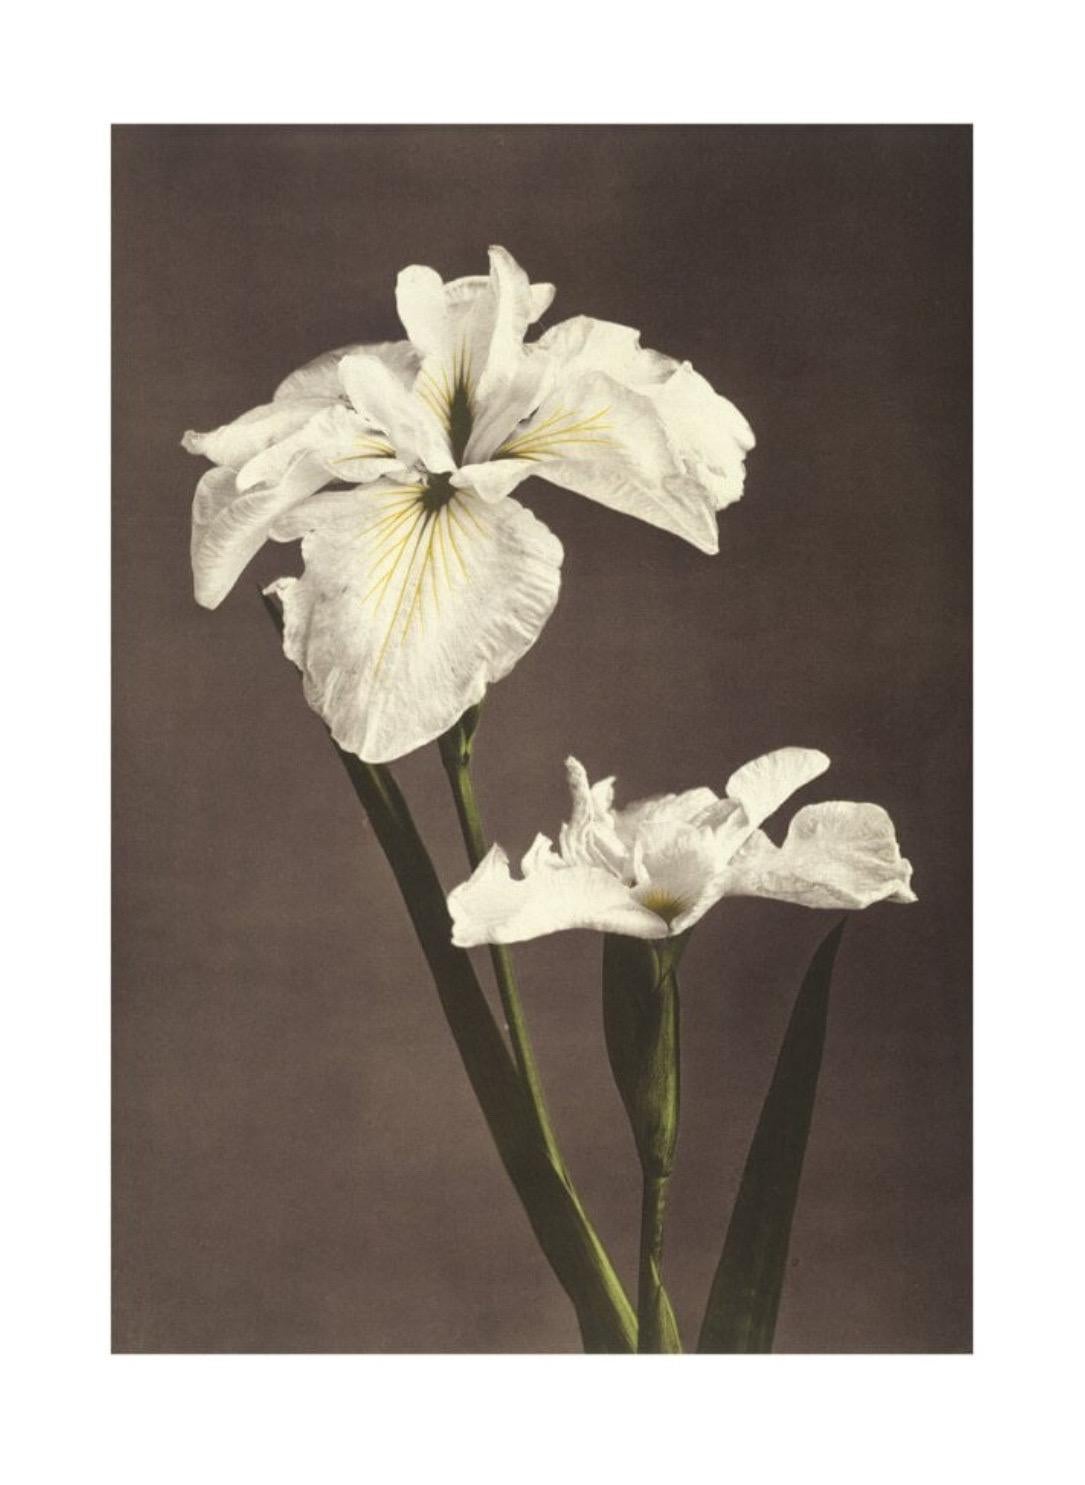 Ogawa Kazumasa, Iris Kæmpferi, aus Einige japanische Blumen